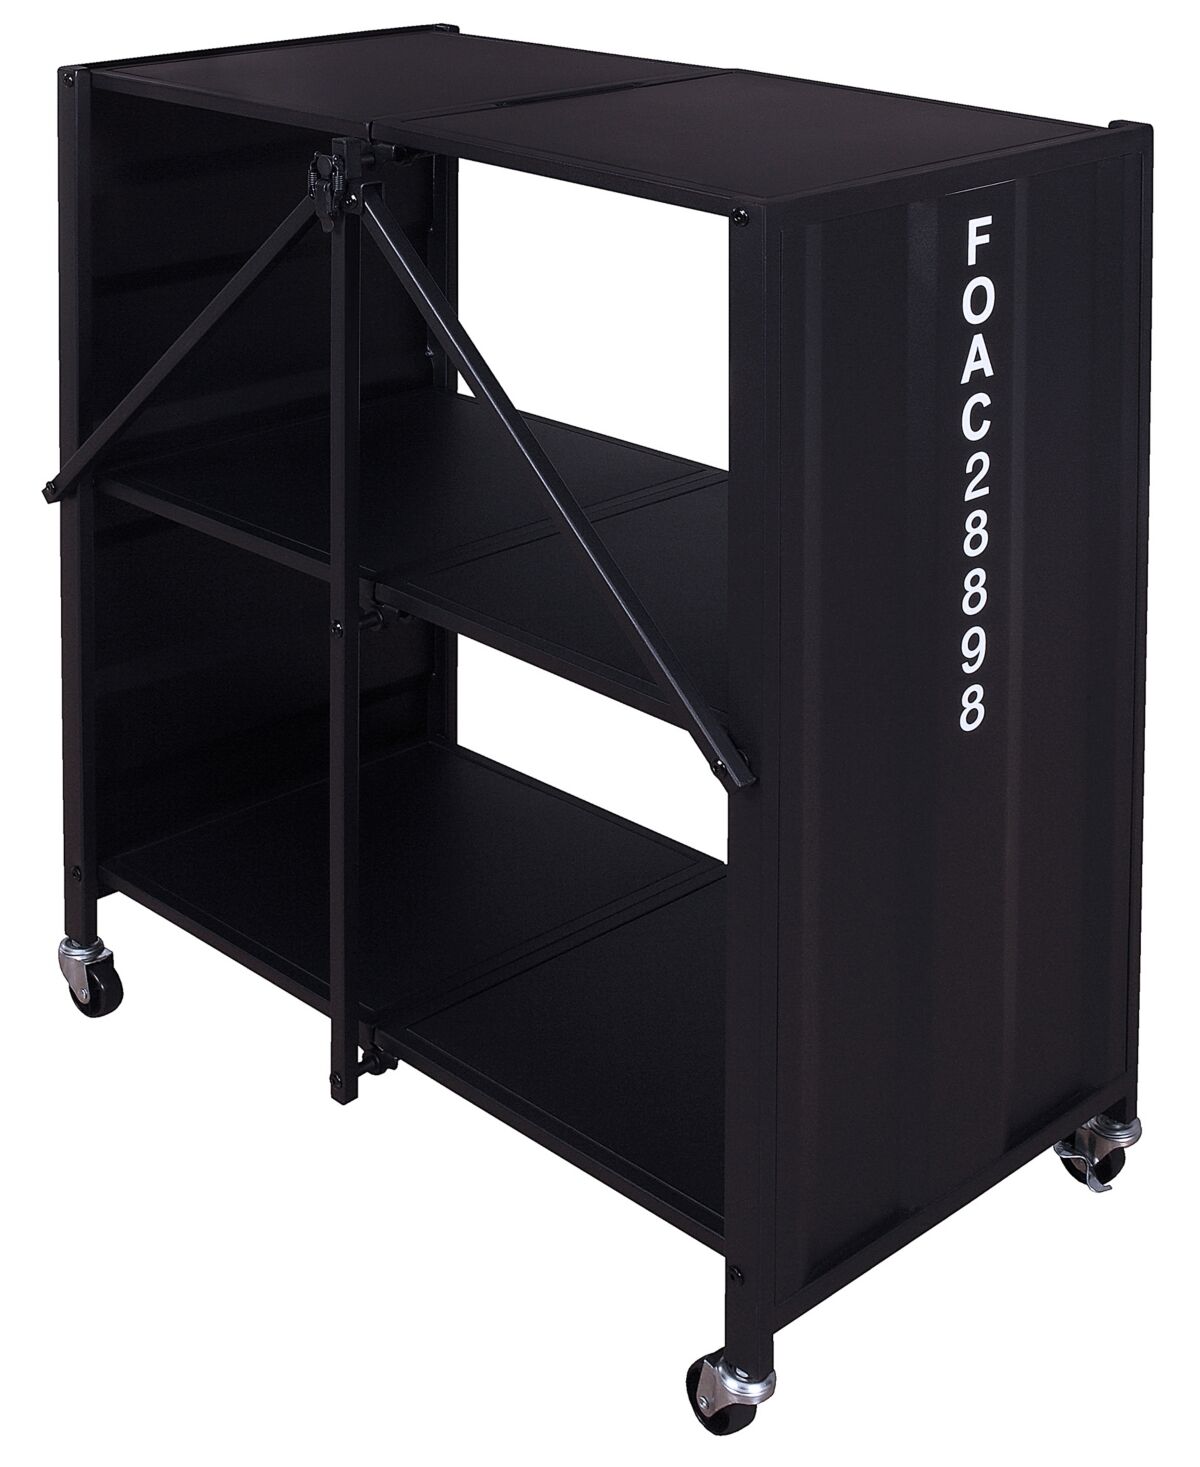 Furniture Of America Ponita 2-Shelf Folding Bookcase - Black